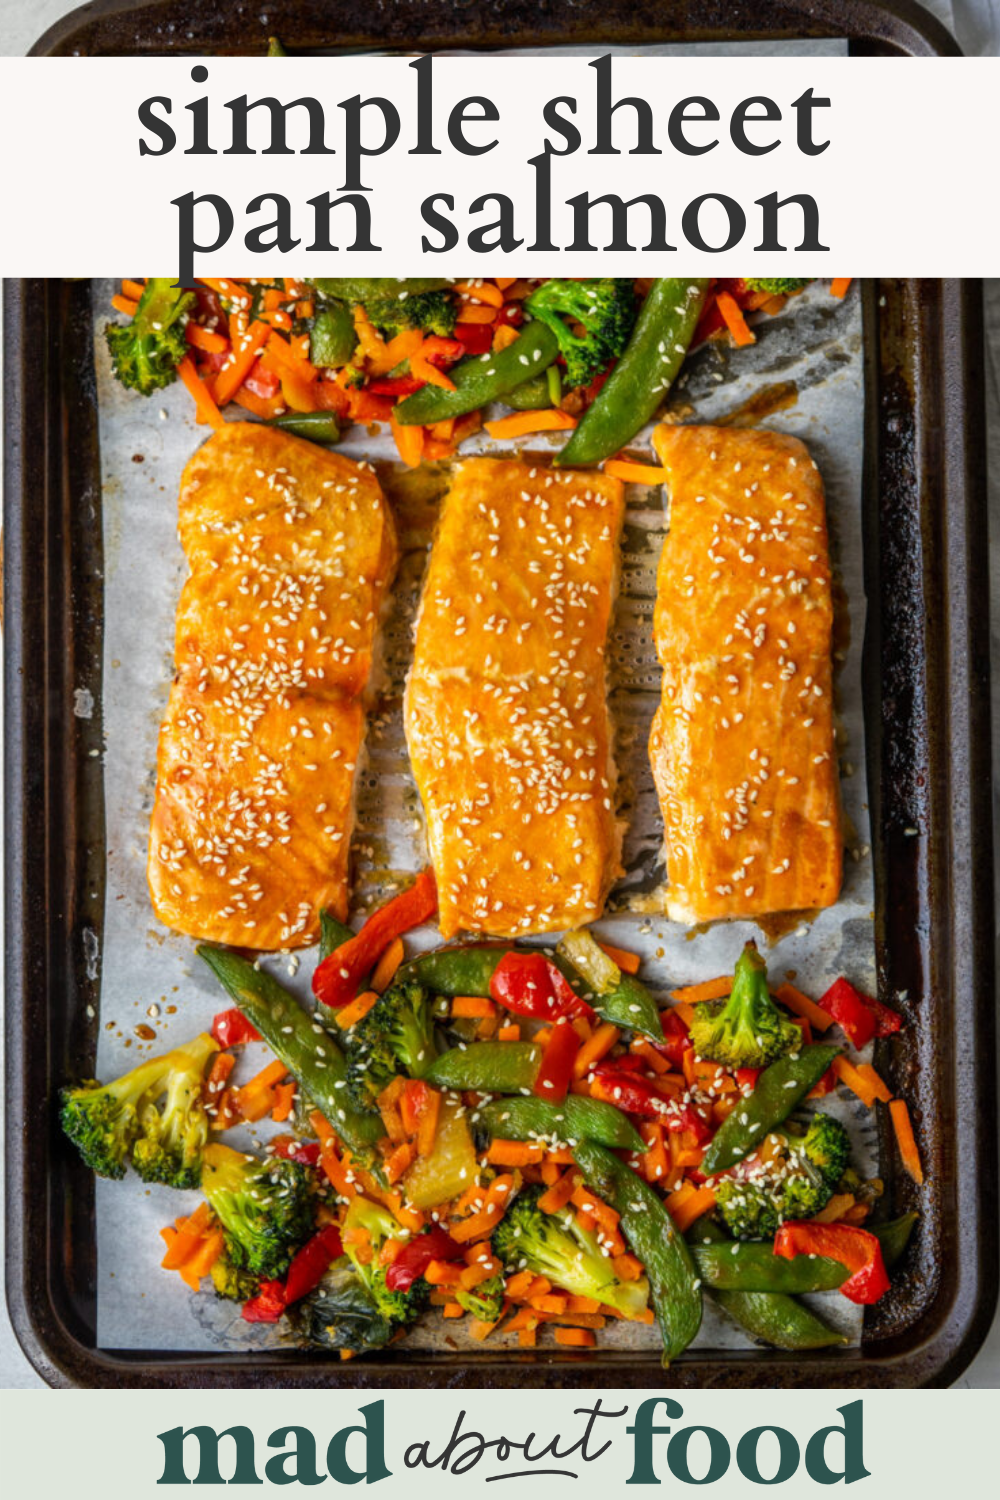 Image for pinning simple sheet pan salmon recipe on Pinterest